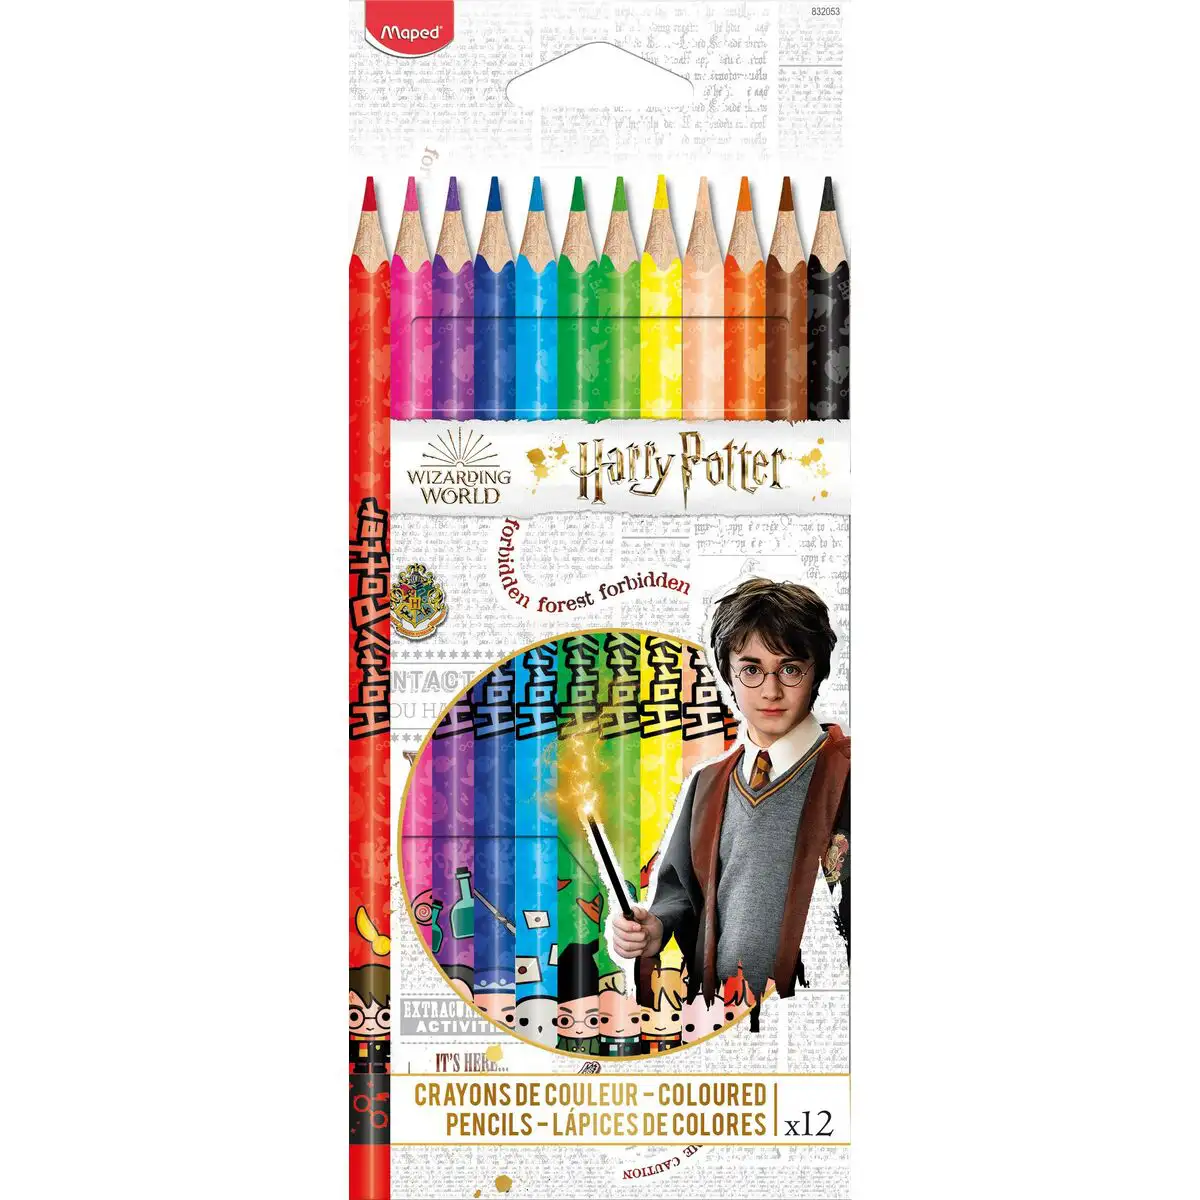 Crayons de couleur maped harry potter multicouleur reconditionne a _4415. Découvrez DIAYTAR SENEGAL - Là où le Choix Rencontre la Qualité. Parcourez notre gamme diversifiée et choisissez parmi des produits conçus pour exceller dans tous les aspects de votre vie.